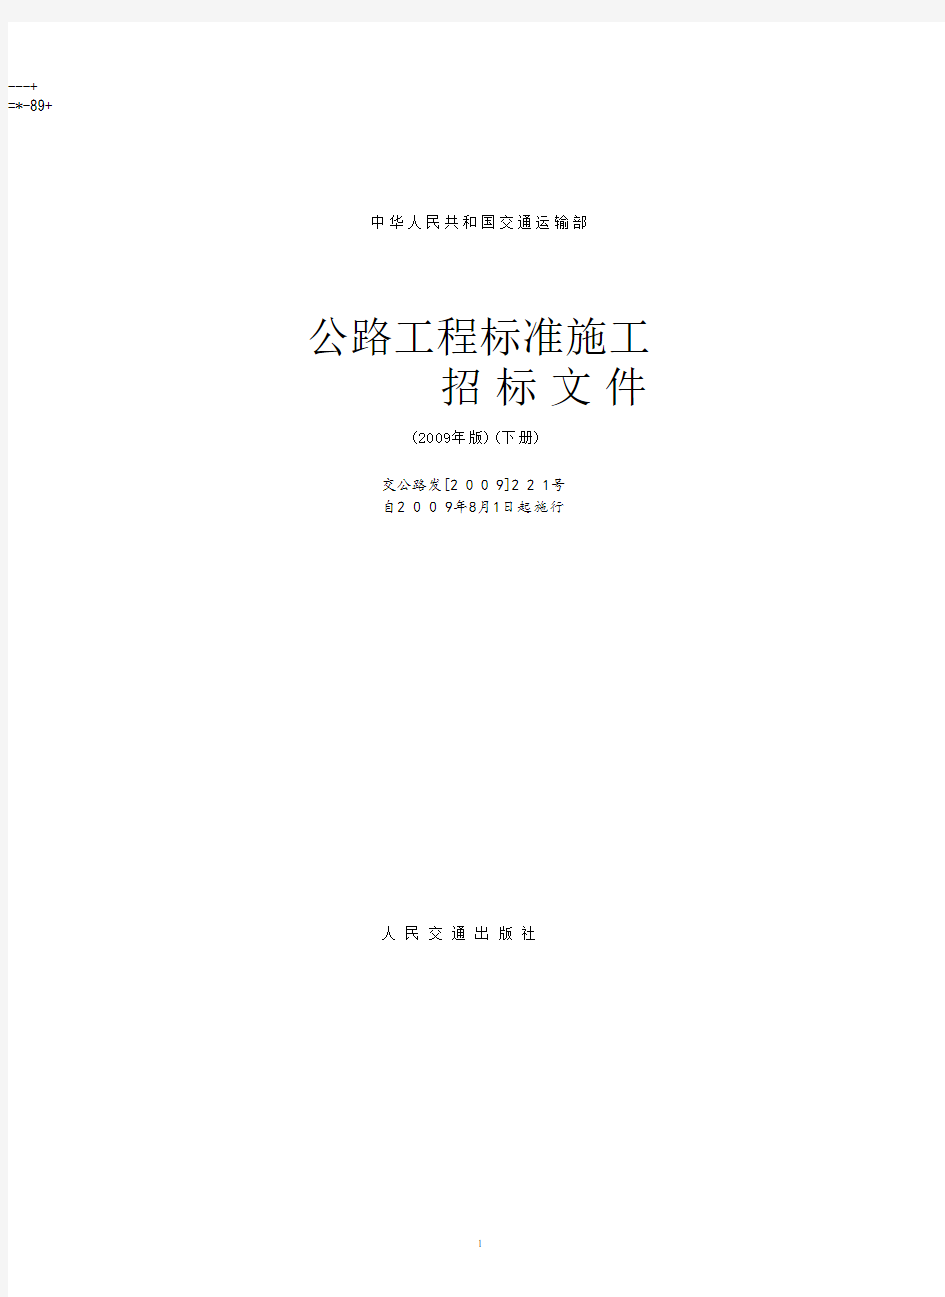 公路工程标准施工招标文件(版)下册(2020年10月整理).pdf